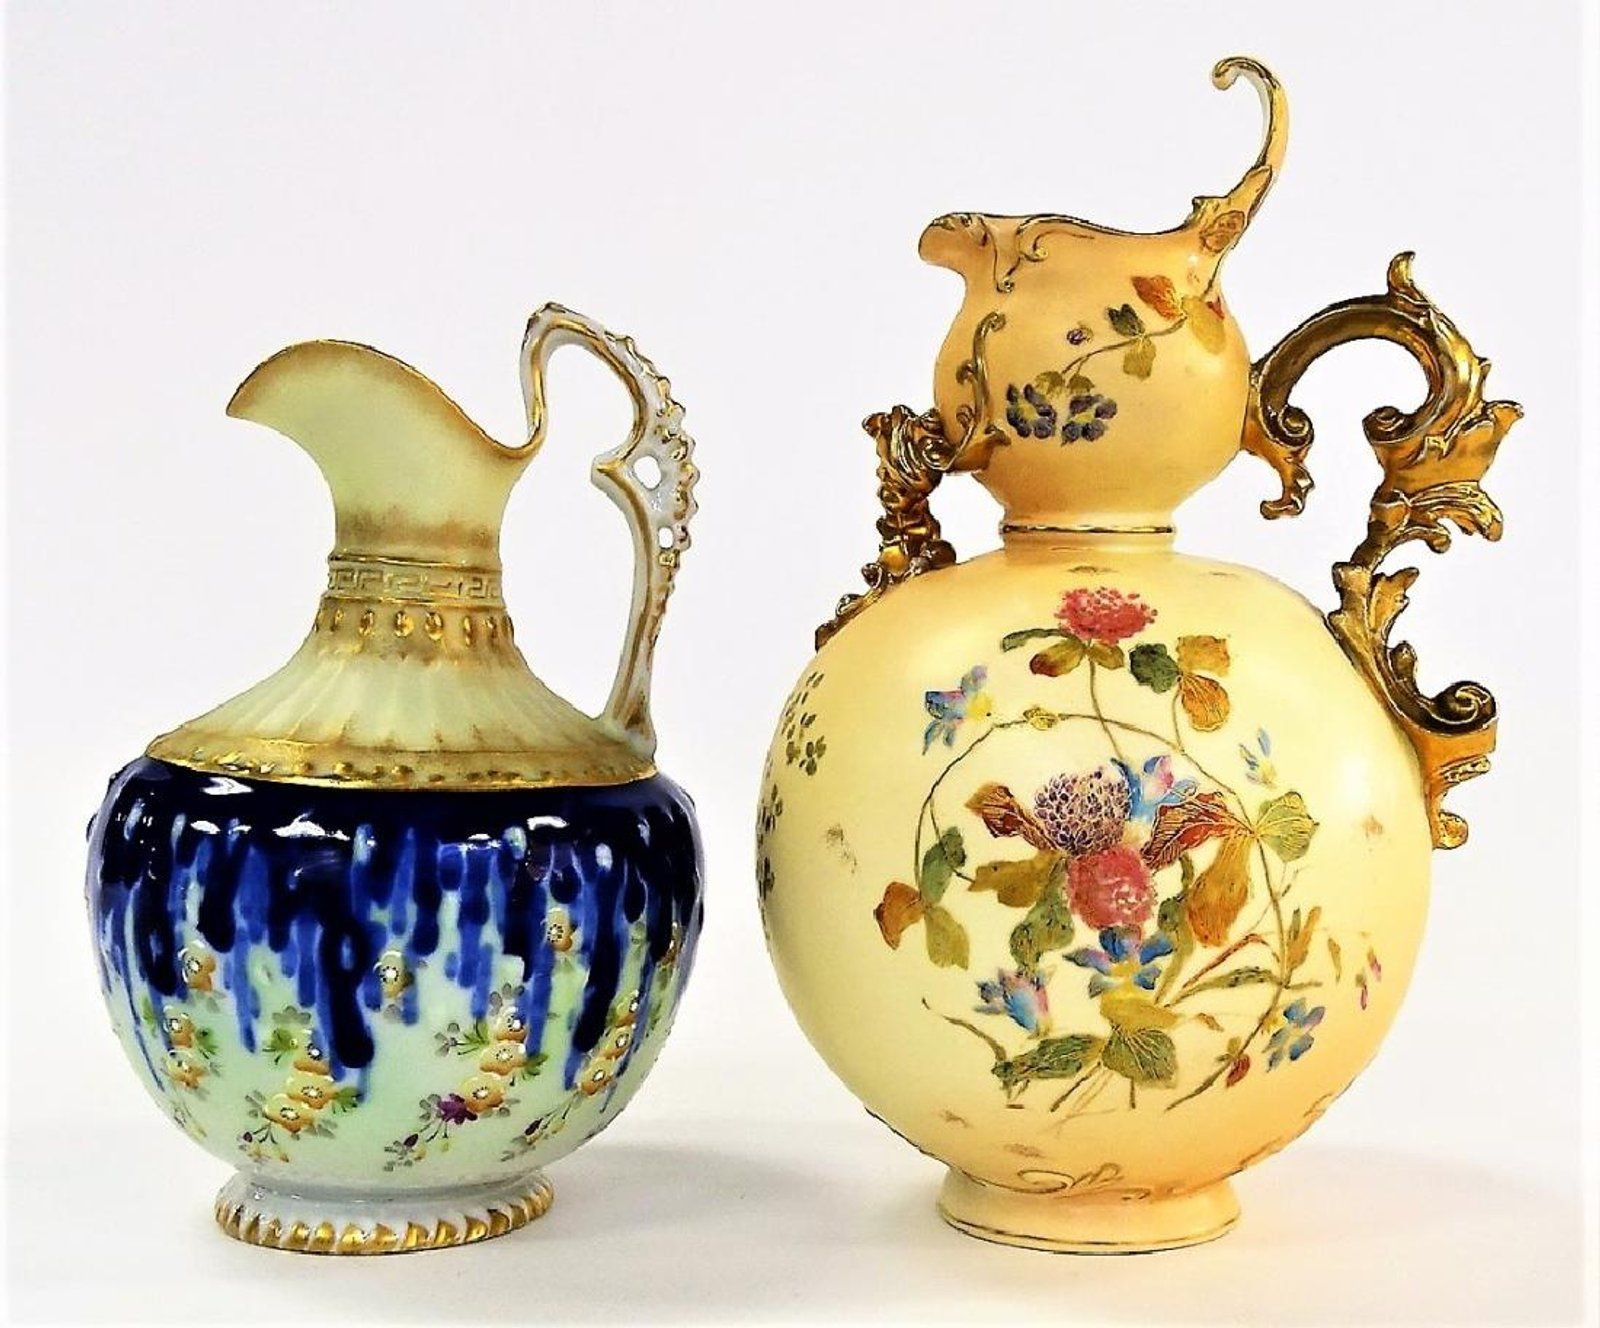 16 Lovely Antique Nippon Vases 2024 free download antique nippon vases of 2 antique continental hand painted ewers keramia porcelan vazak pertaining to 2 antique continental hand painted ewers